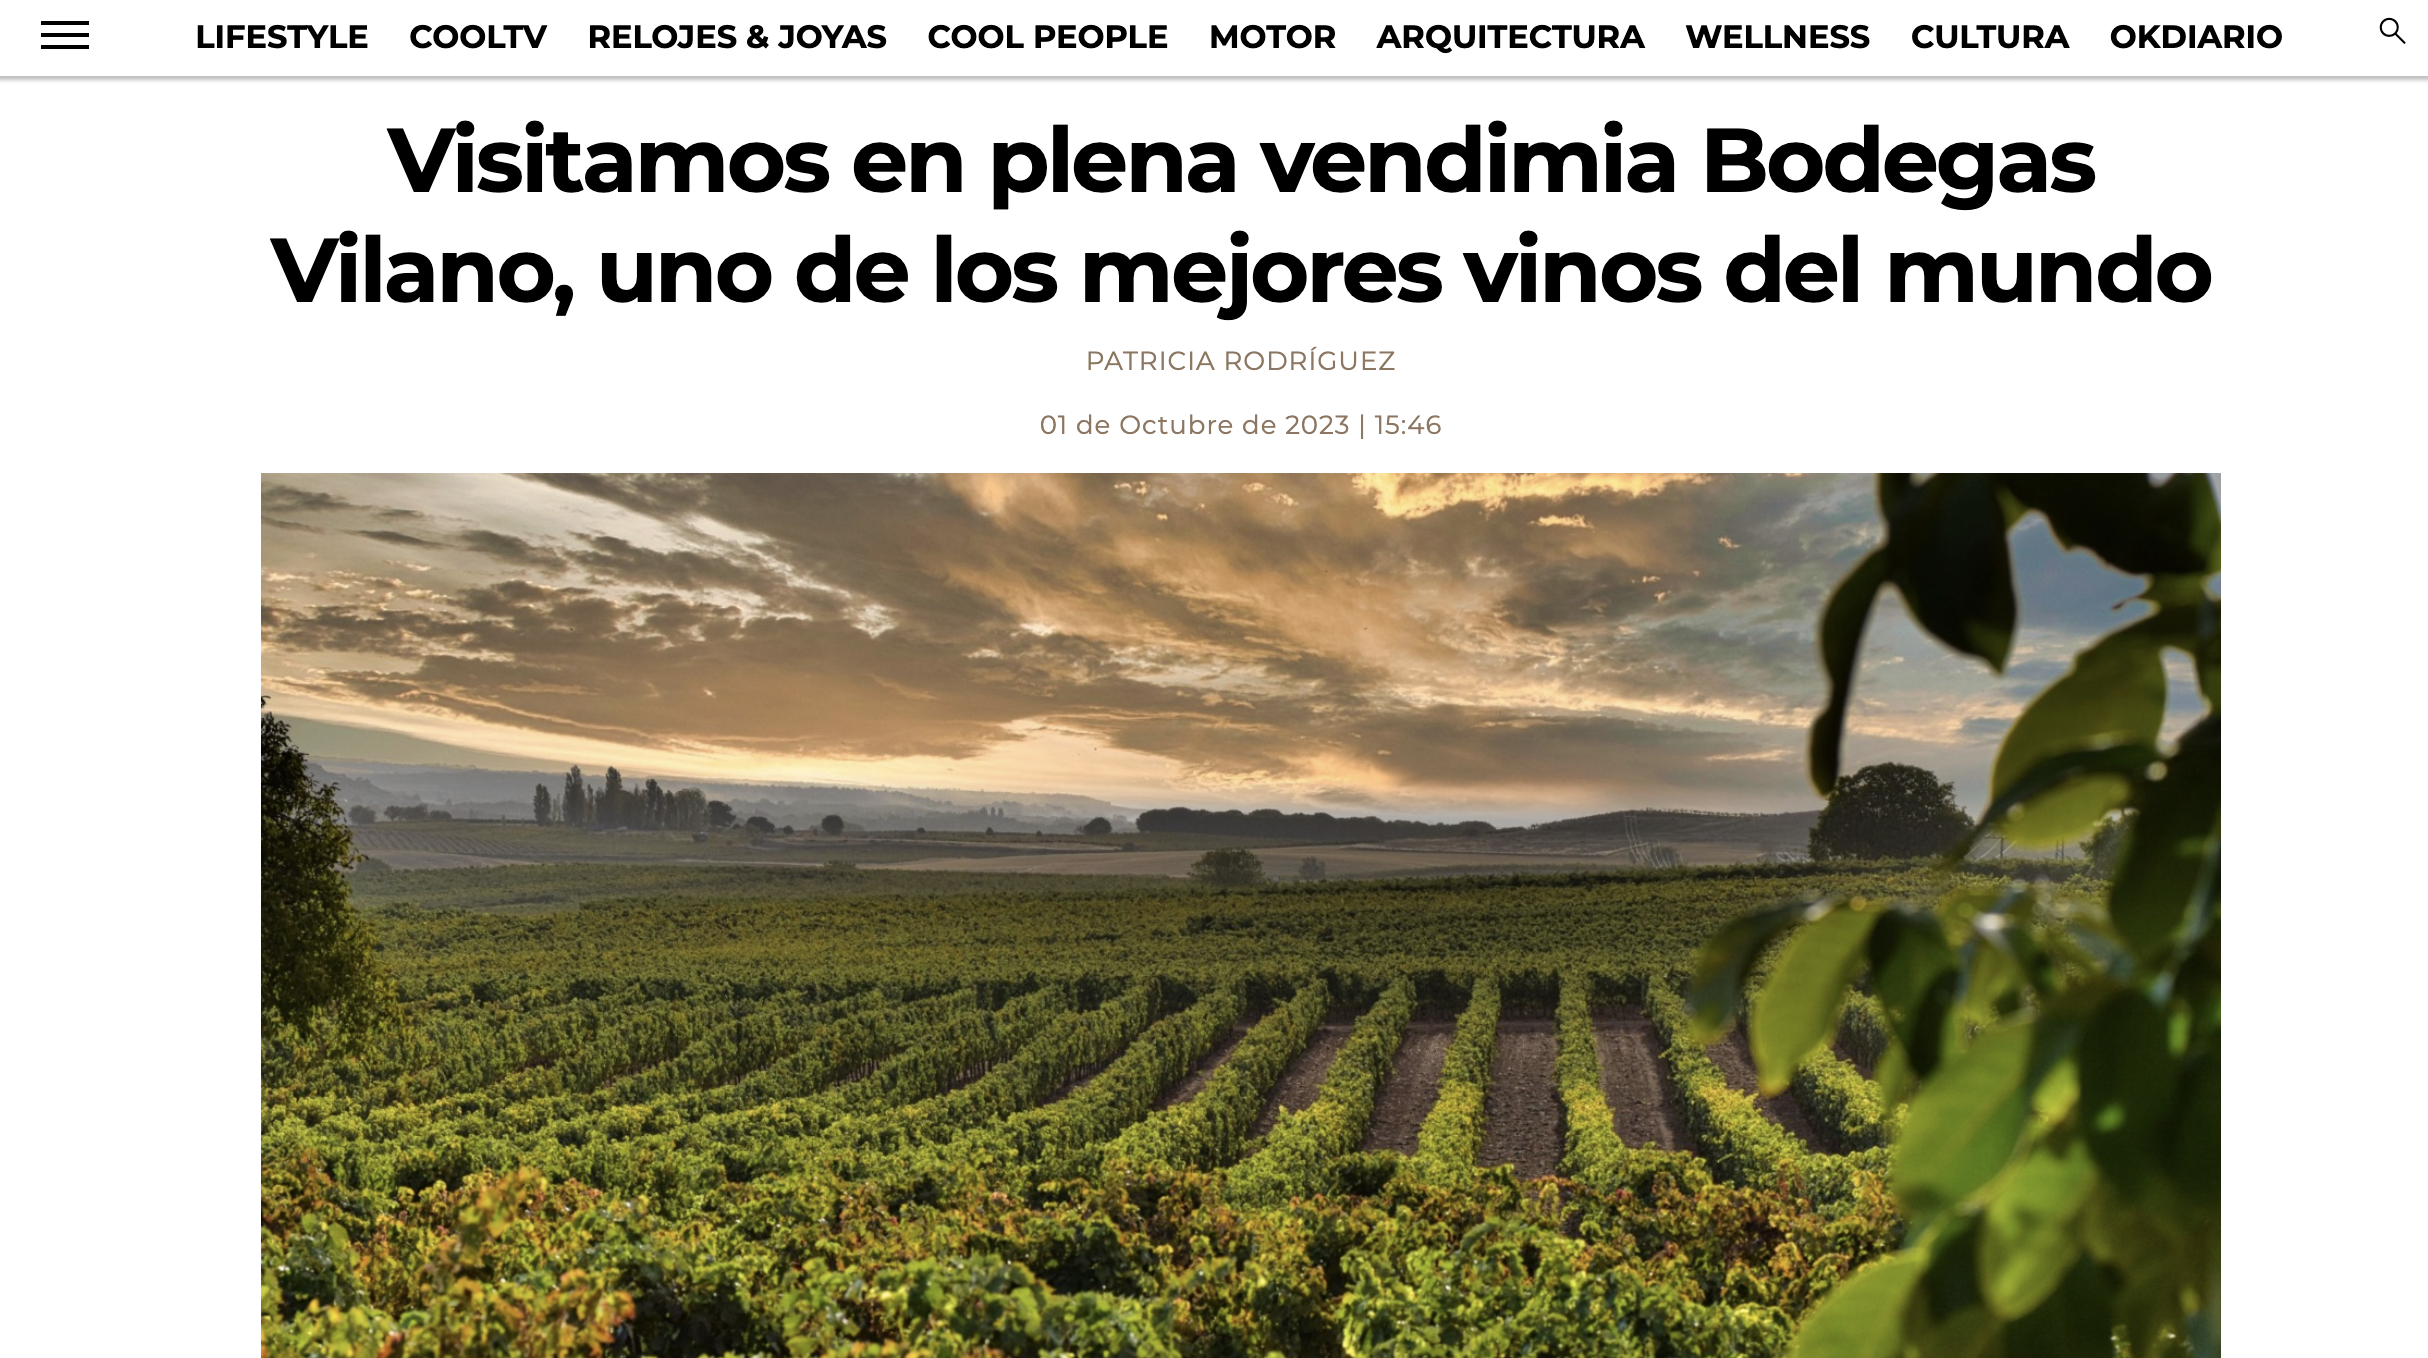 Die Weinberge von Vilano wurden von der Luxuspublikation COOL ausgewählt, um die Geschichte des Jahrgangs 2023 zu erzählen